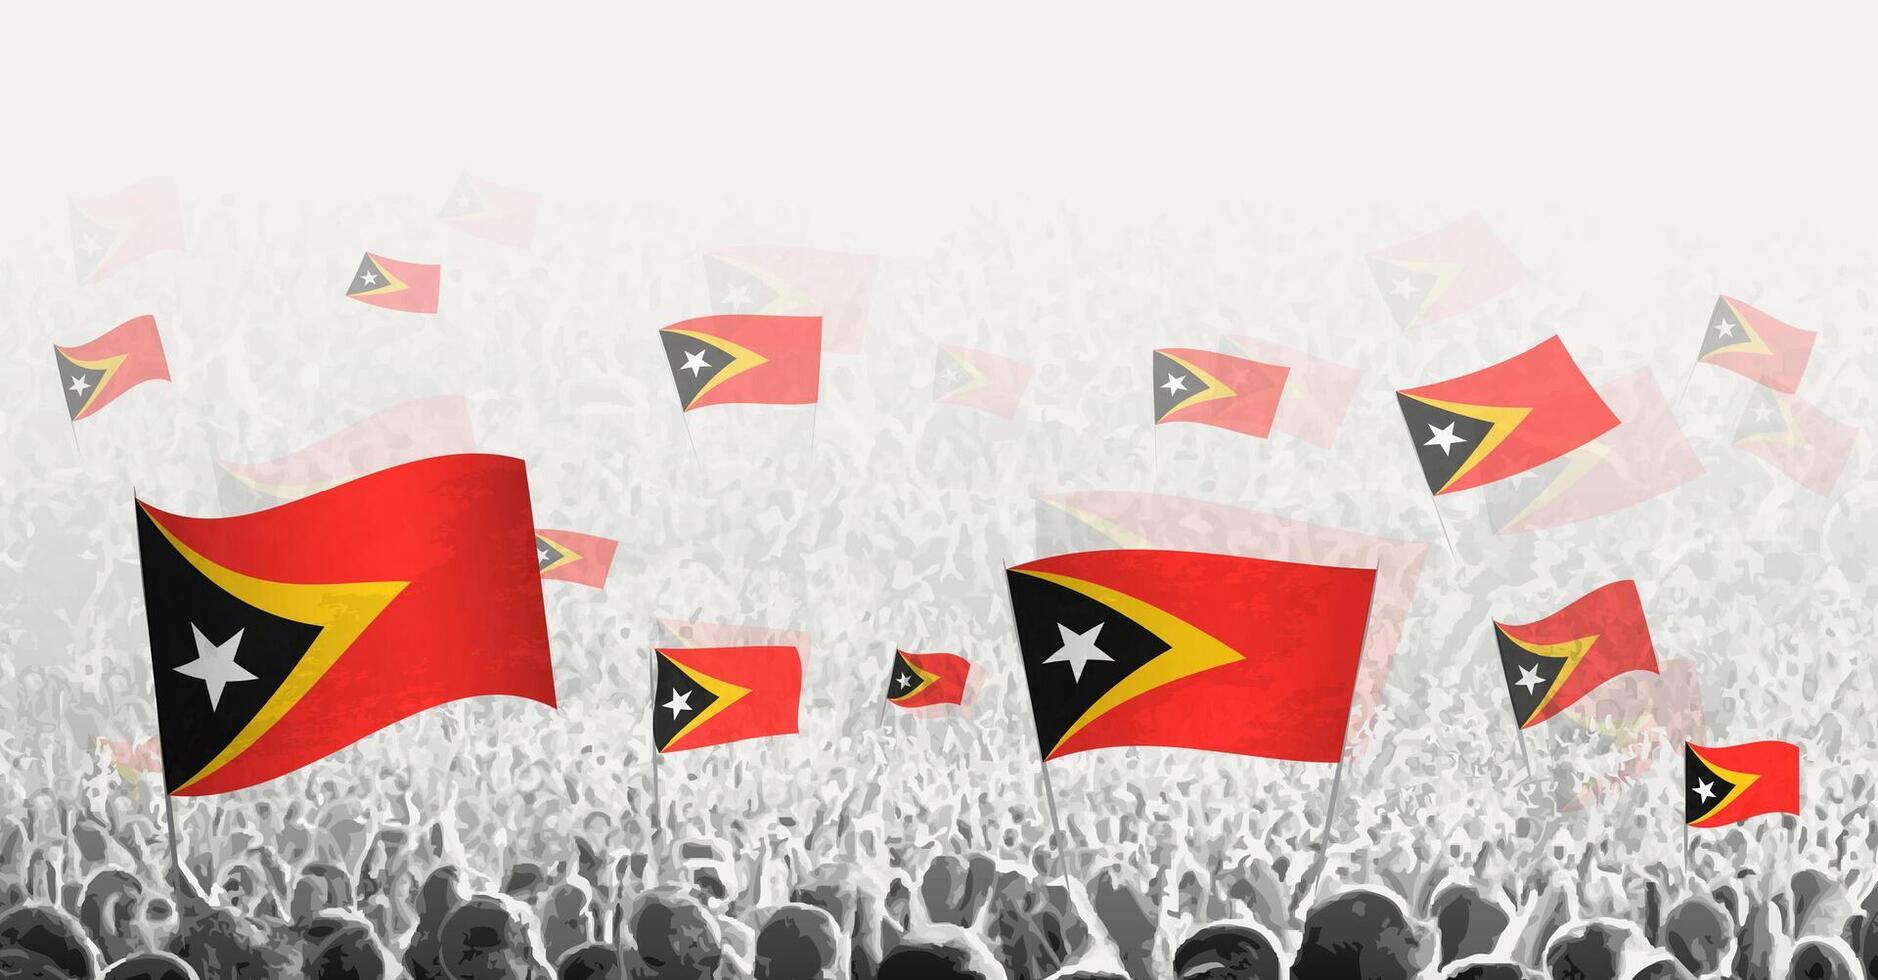 resumen multitud con bandera de este Timor. pueblos protesta, revolución, Huelga y demostración con bandera de este Timor. vector